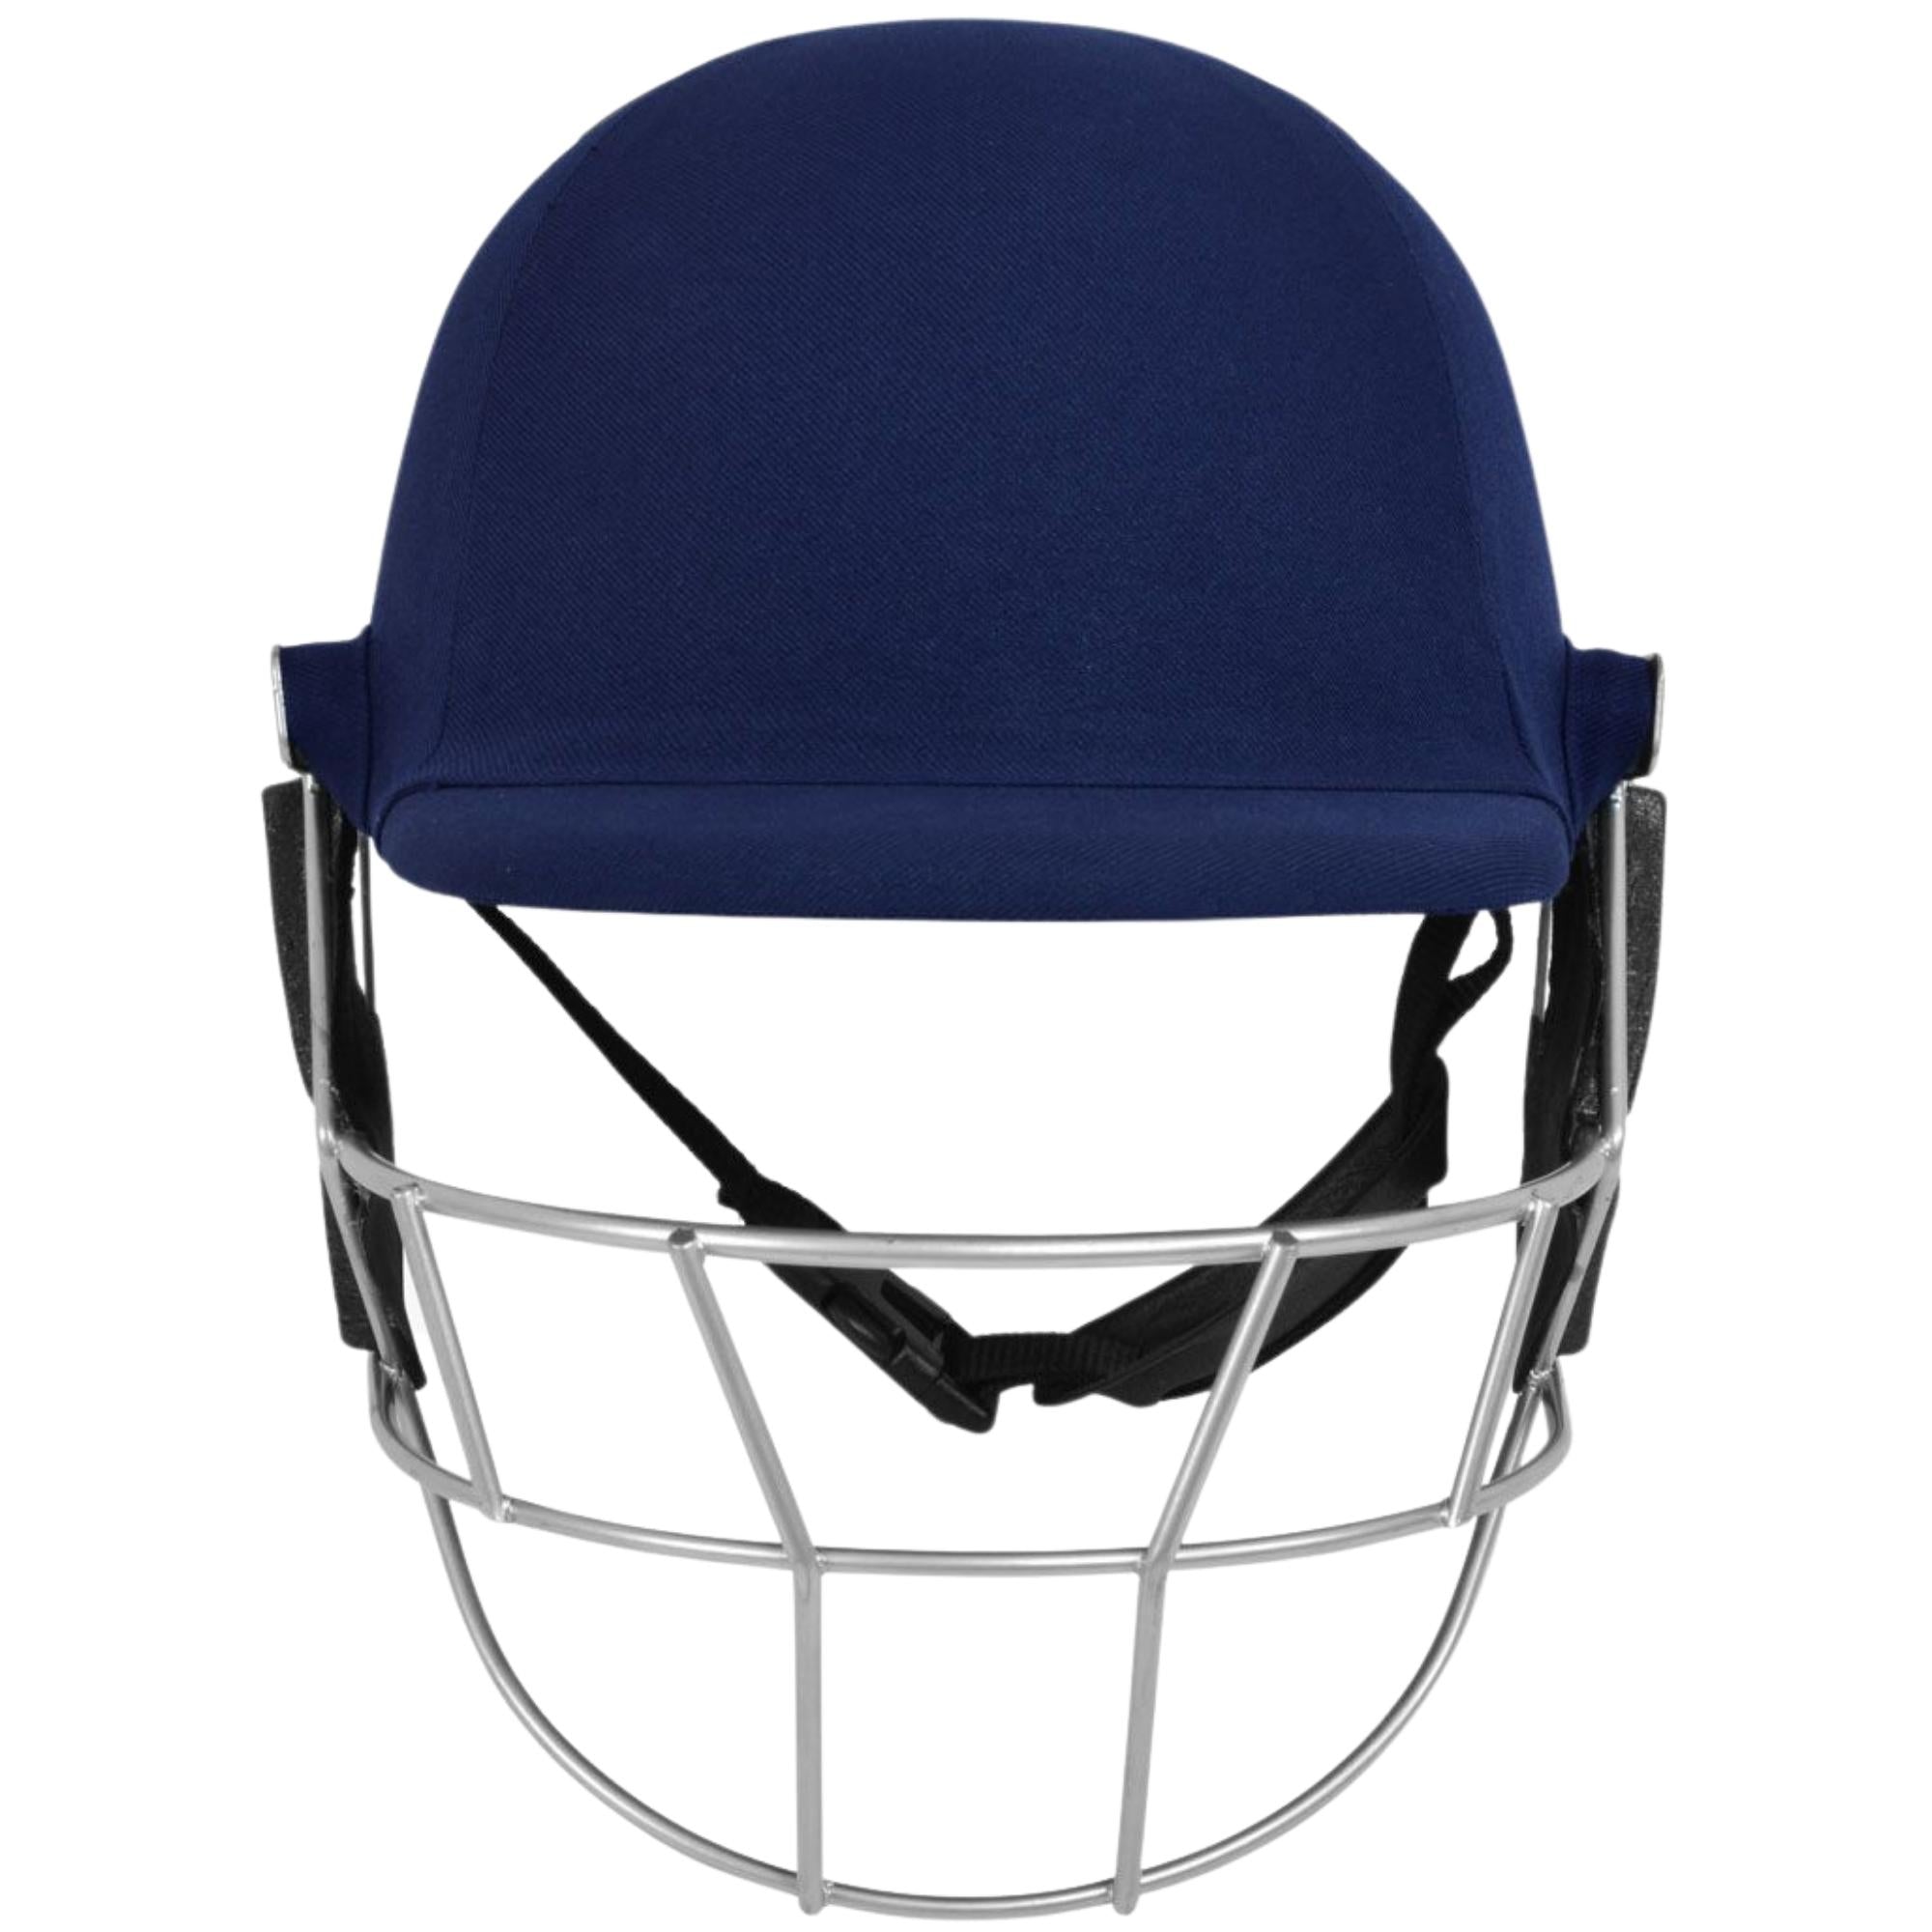 DSC Scud Titanium Cricket Helmet